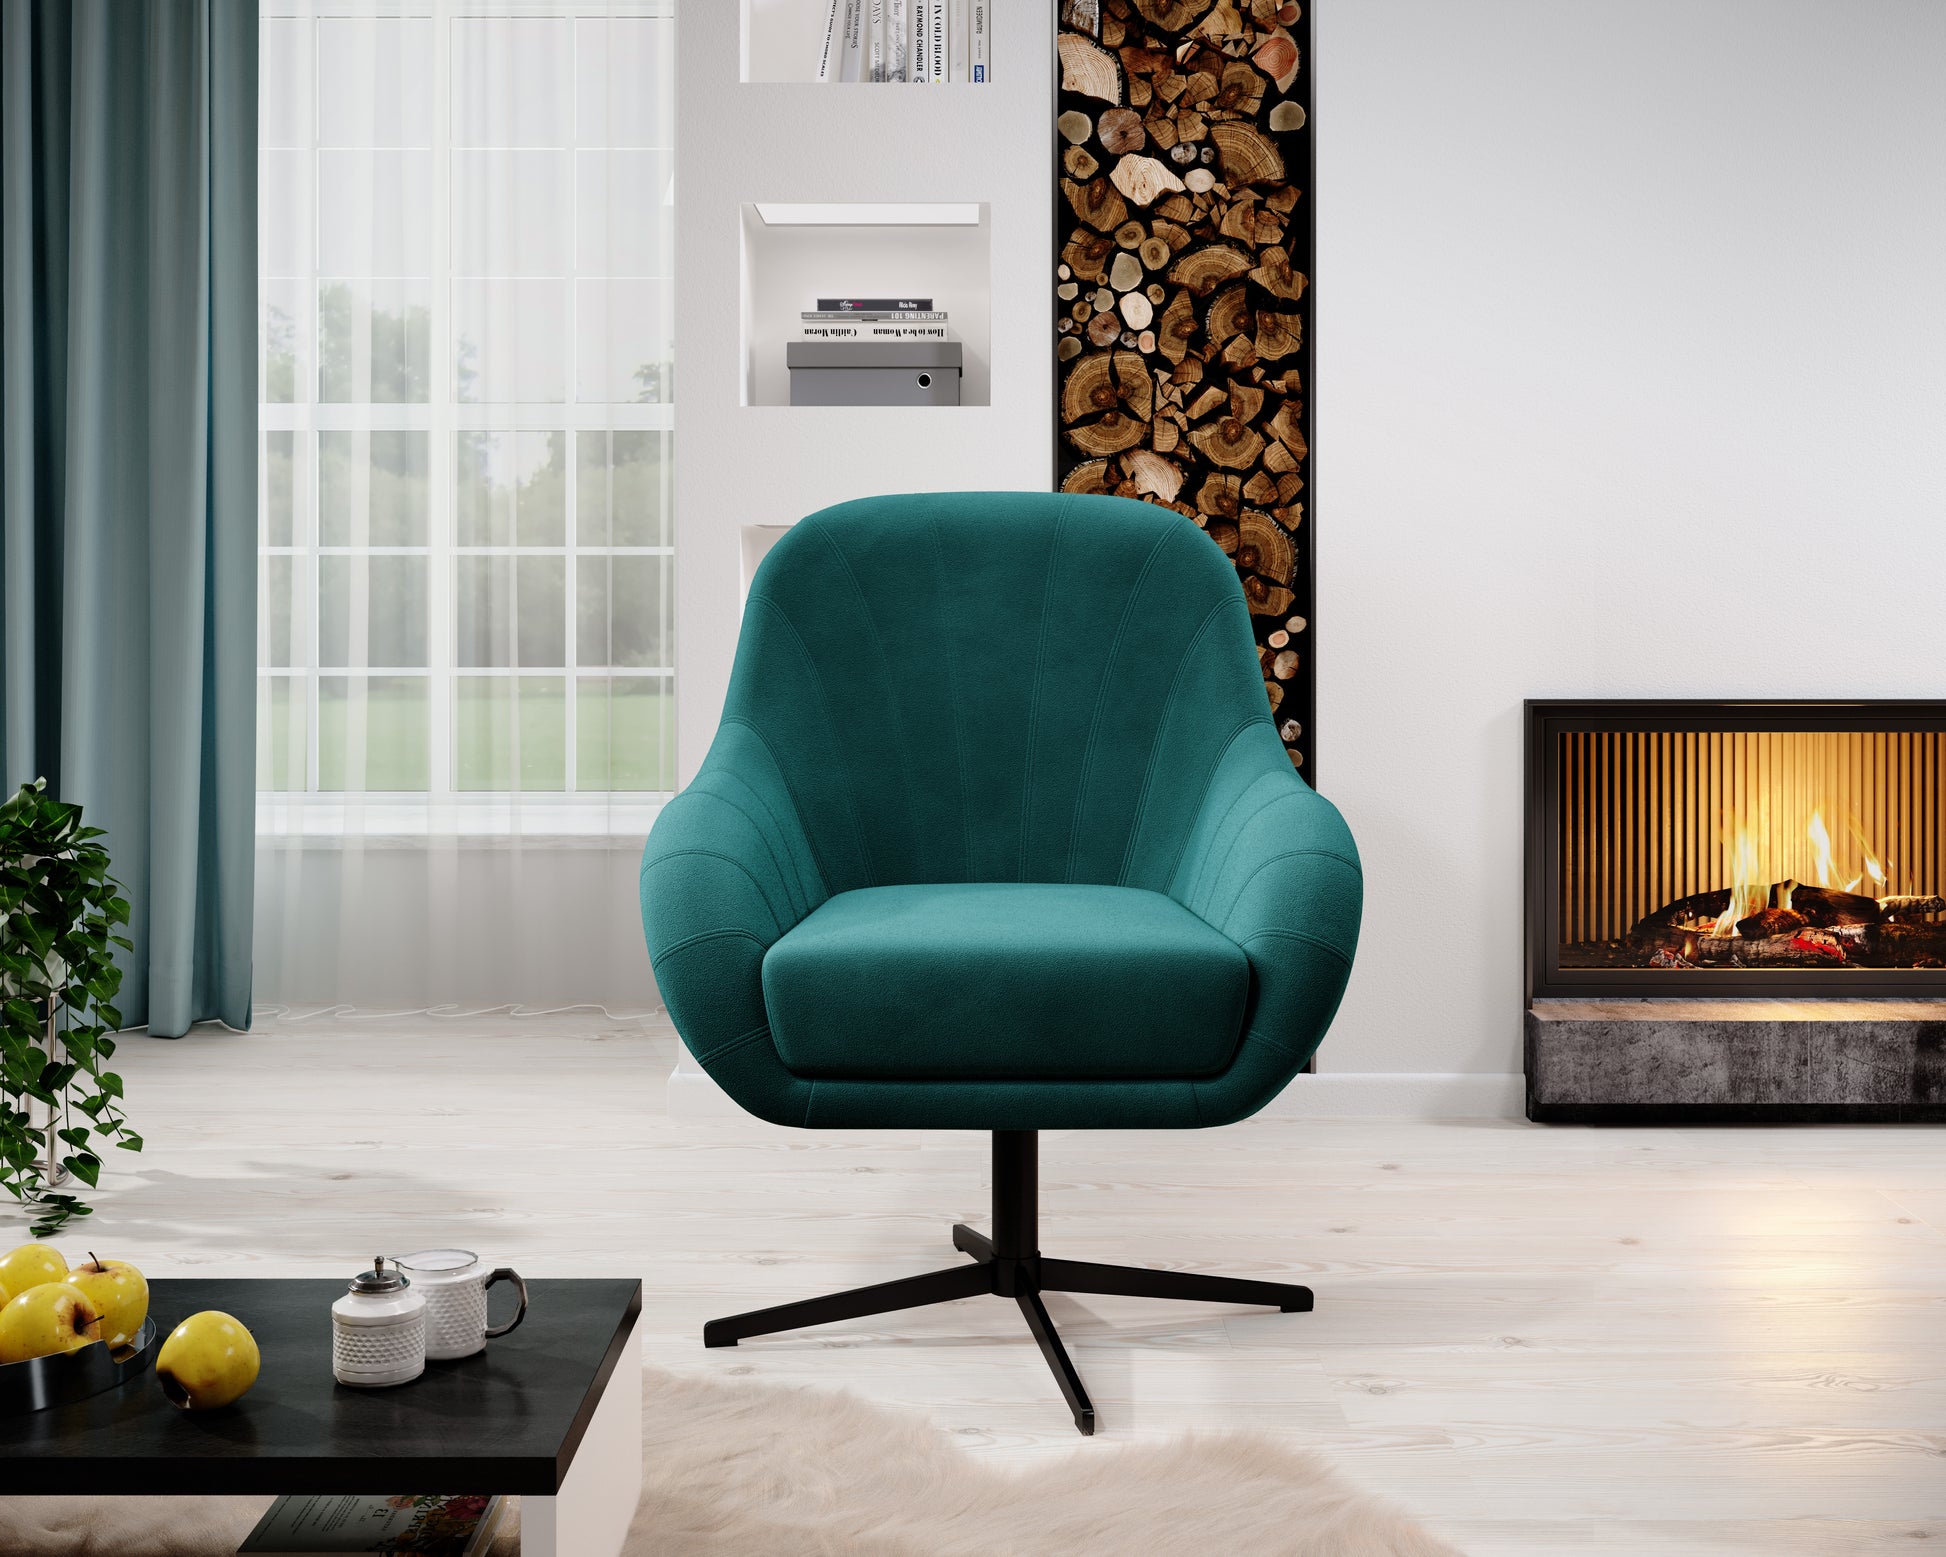 Przykładowa aranżacja z wykorzystaniem fotela obrotowego do salonu gabinetu COCO w kolorze turkusowym. Idealnie zdobi nowoczesne wnętrze ze stylowymi akcentami.